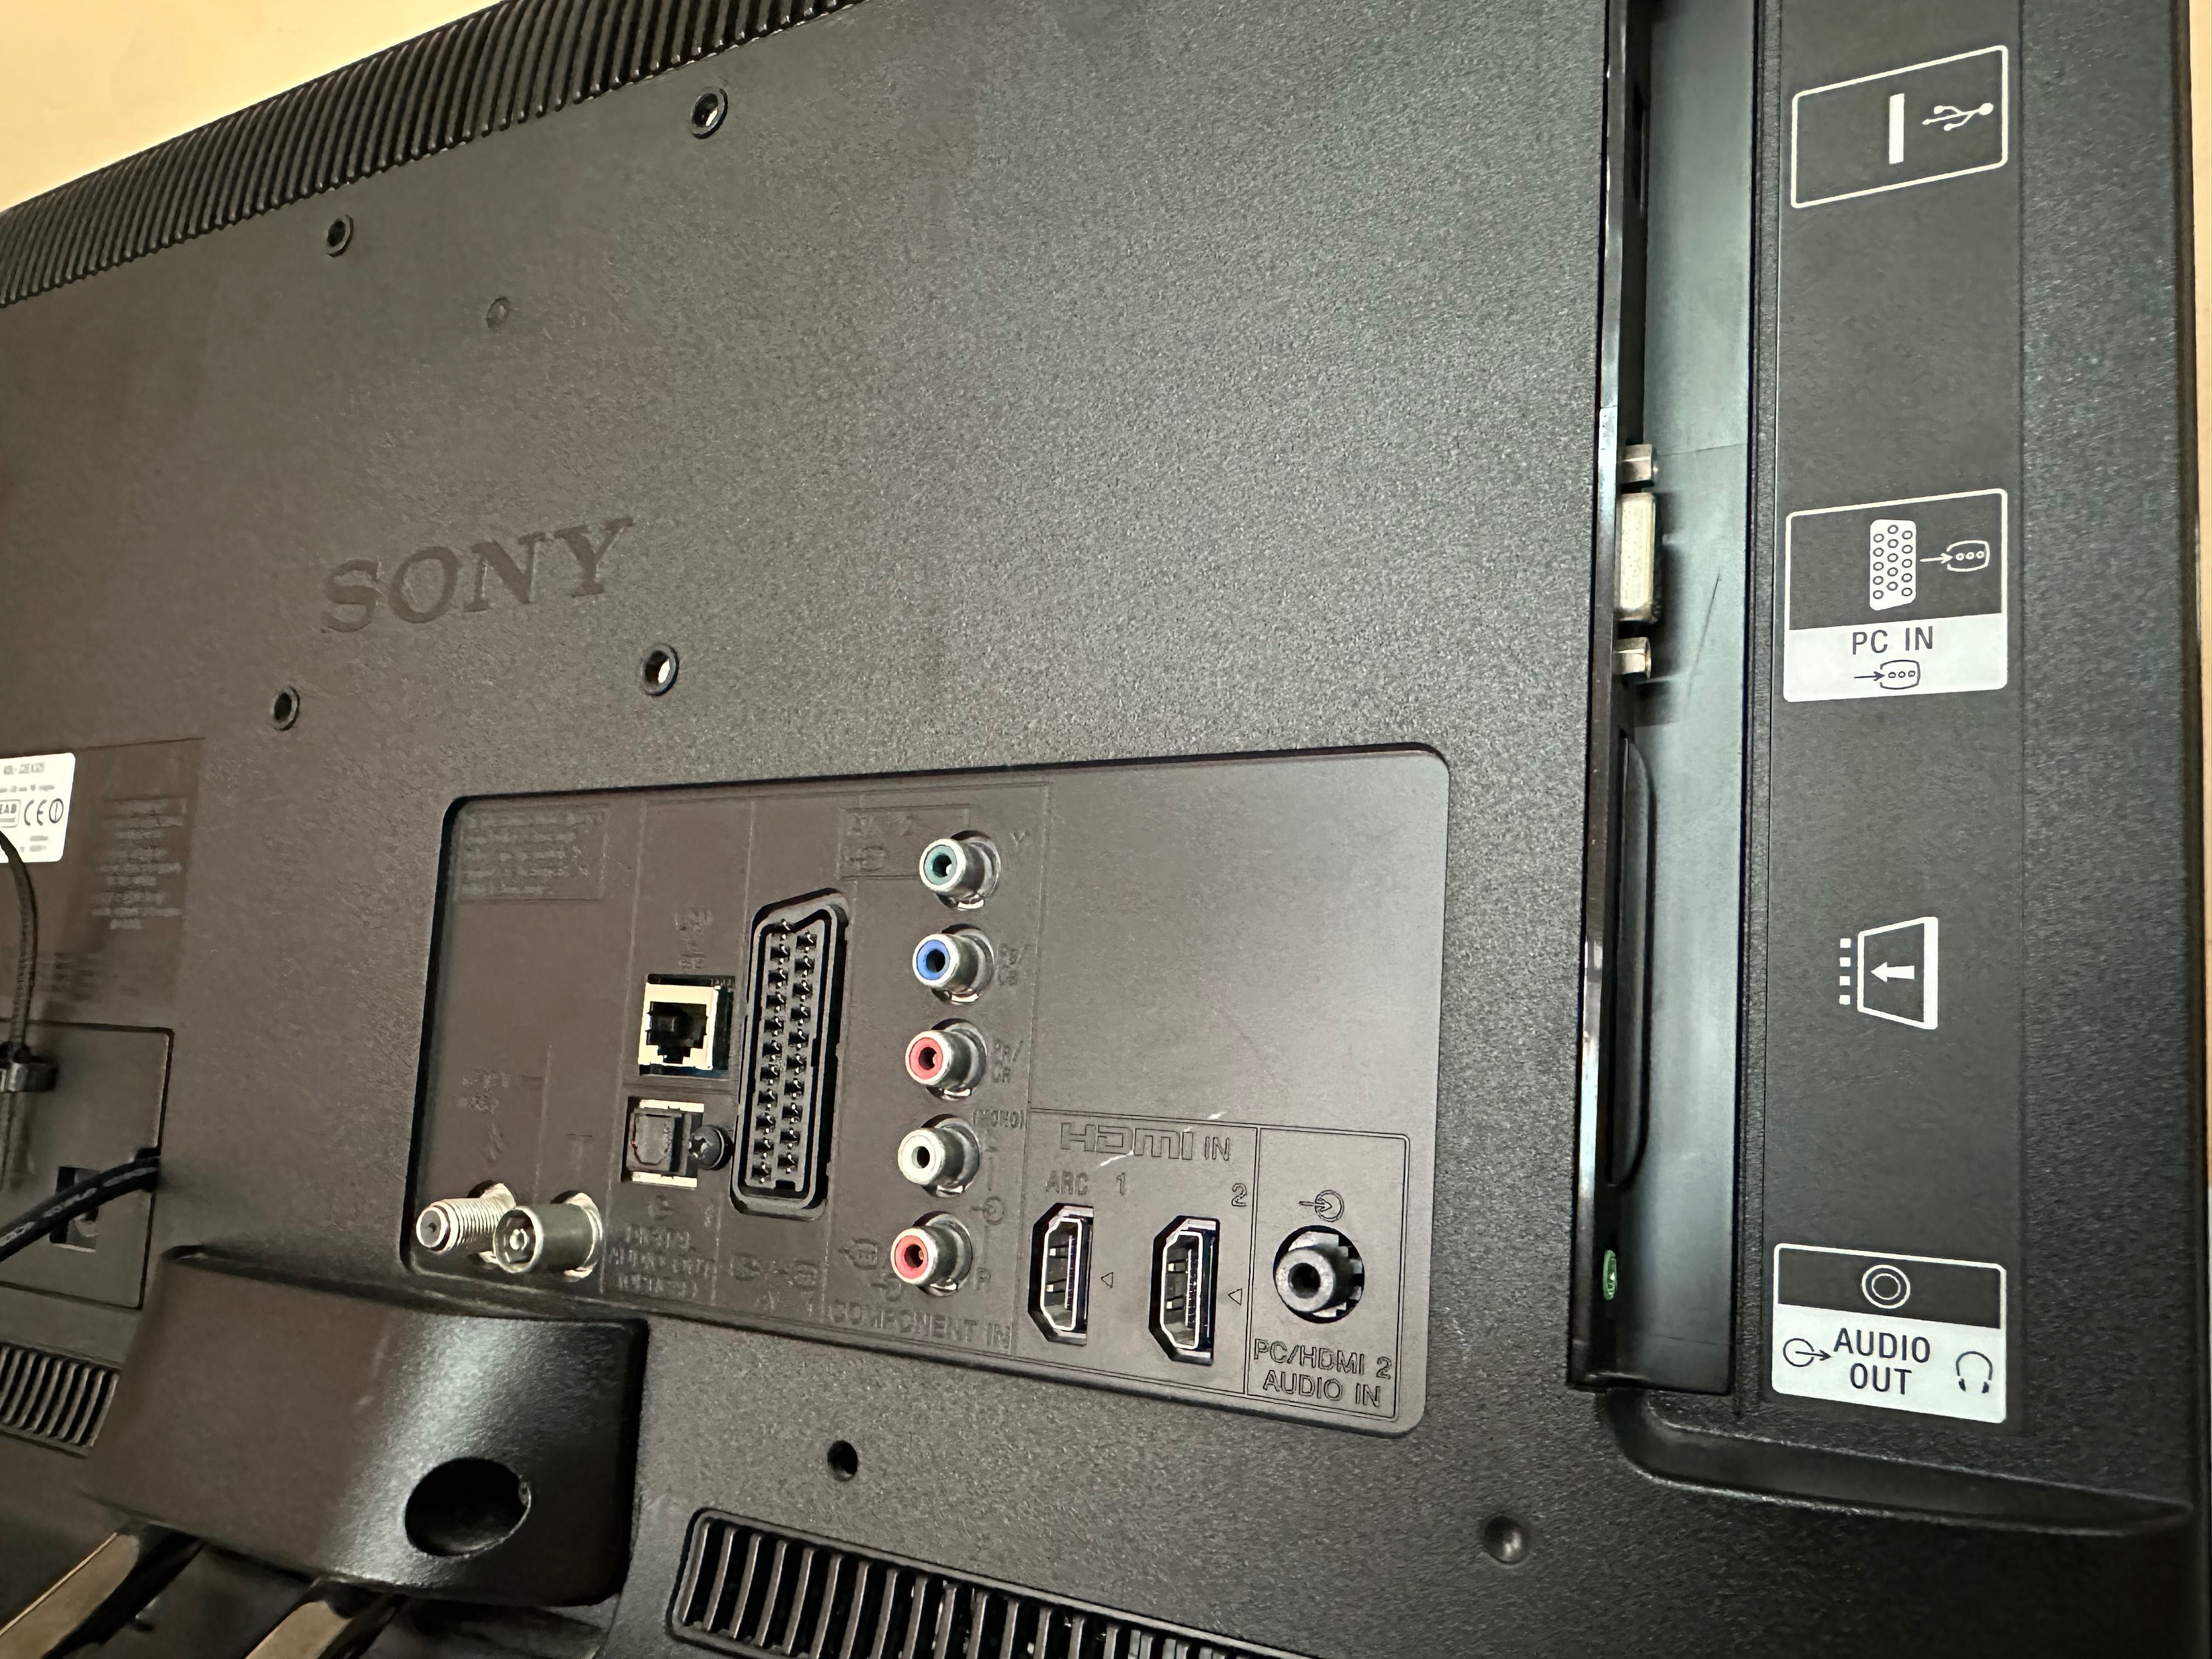 Телевізор Sony KDL-22EX325 екран 22 дюйми LED Гарне зображення!